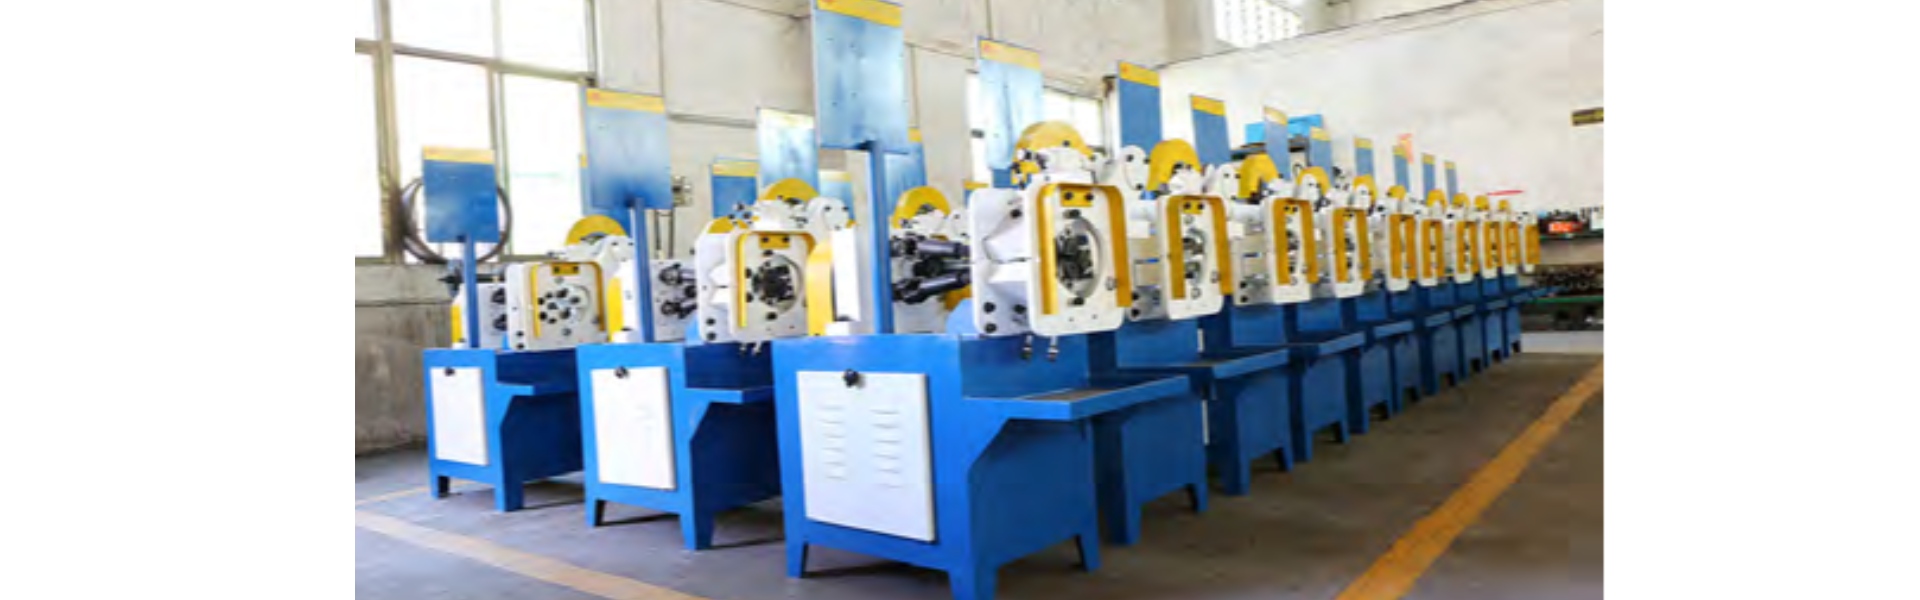 ロールパスマシン、自動パイプ切断機、完全自動歯形ローラー,Dongguan Hongbo Precision Machinery Manufacturing Co.,Ltd.